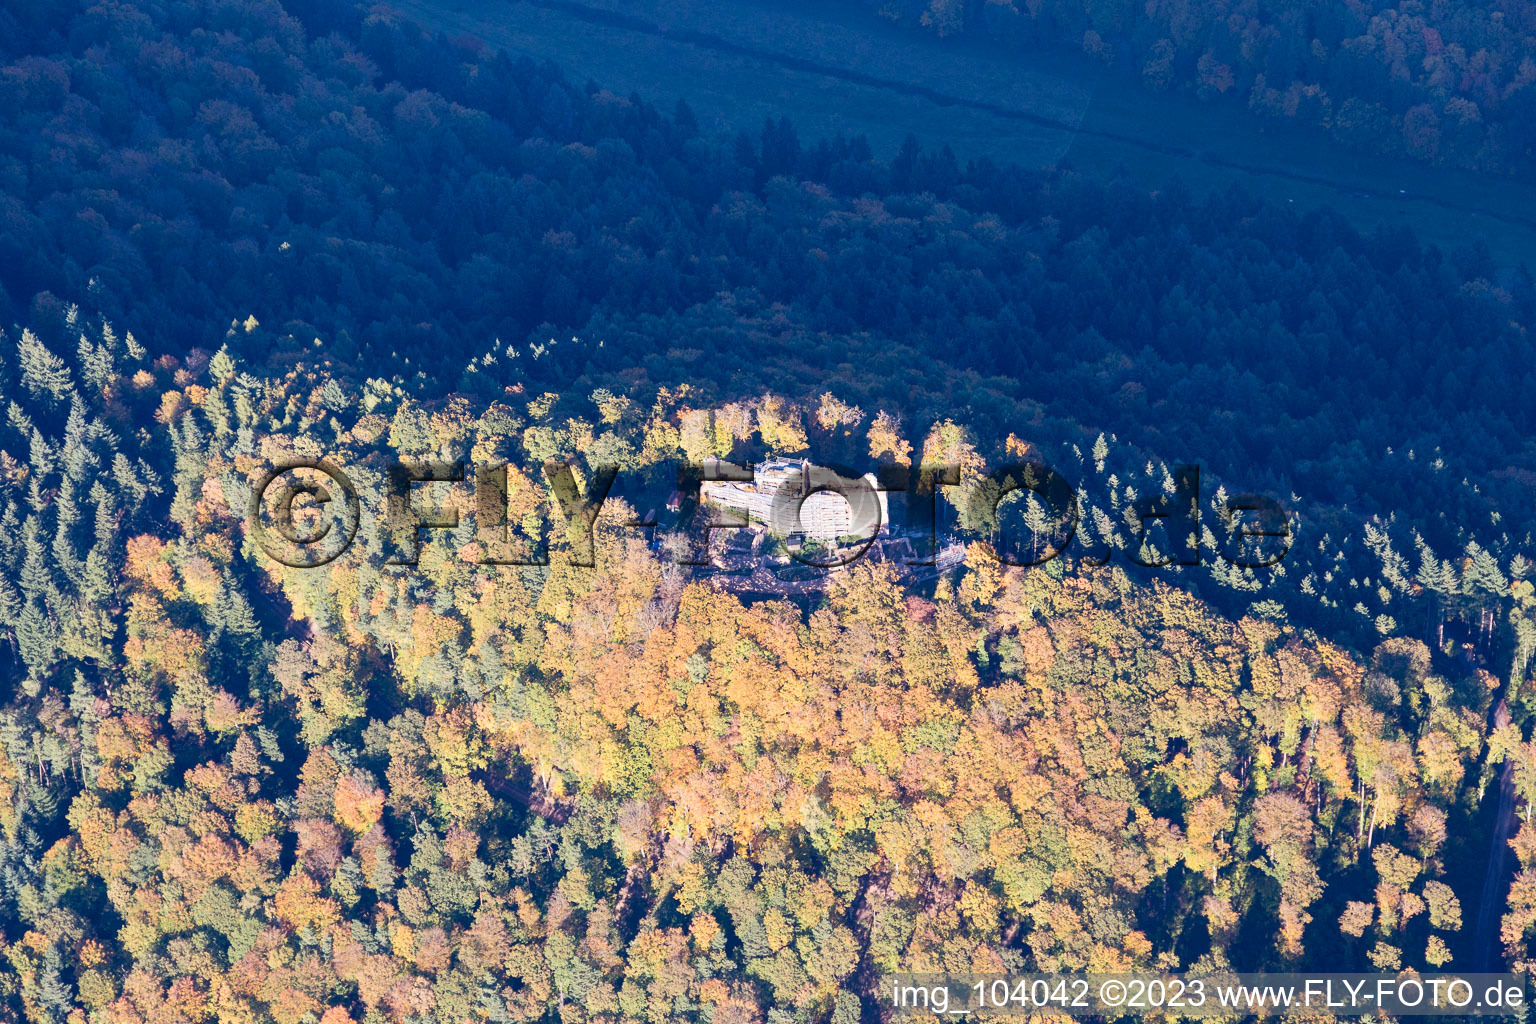 Ramberg dans le département Rhénanie-Palatinat, Allemagne vue d'en haut